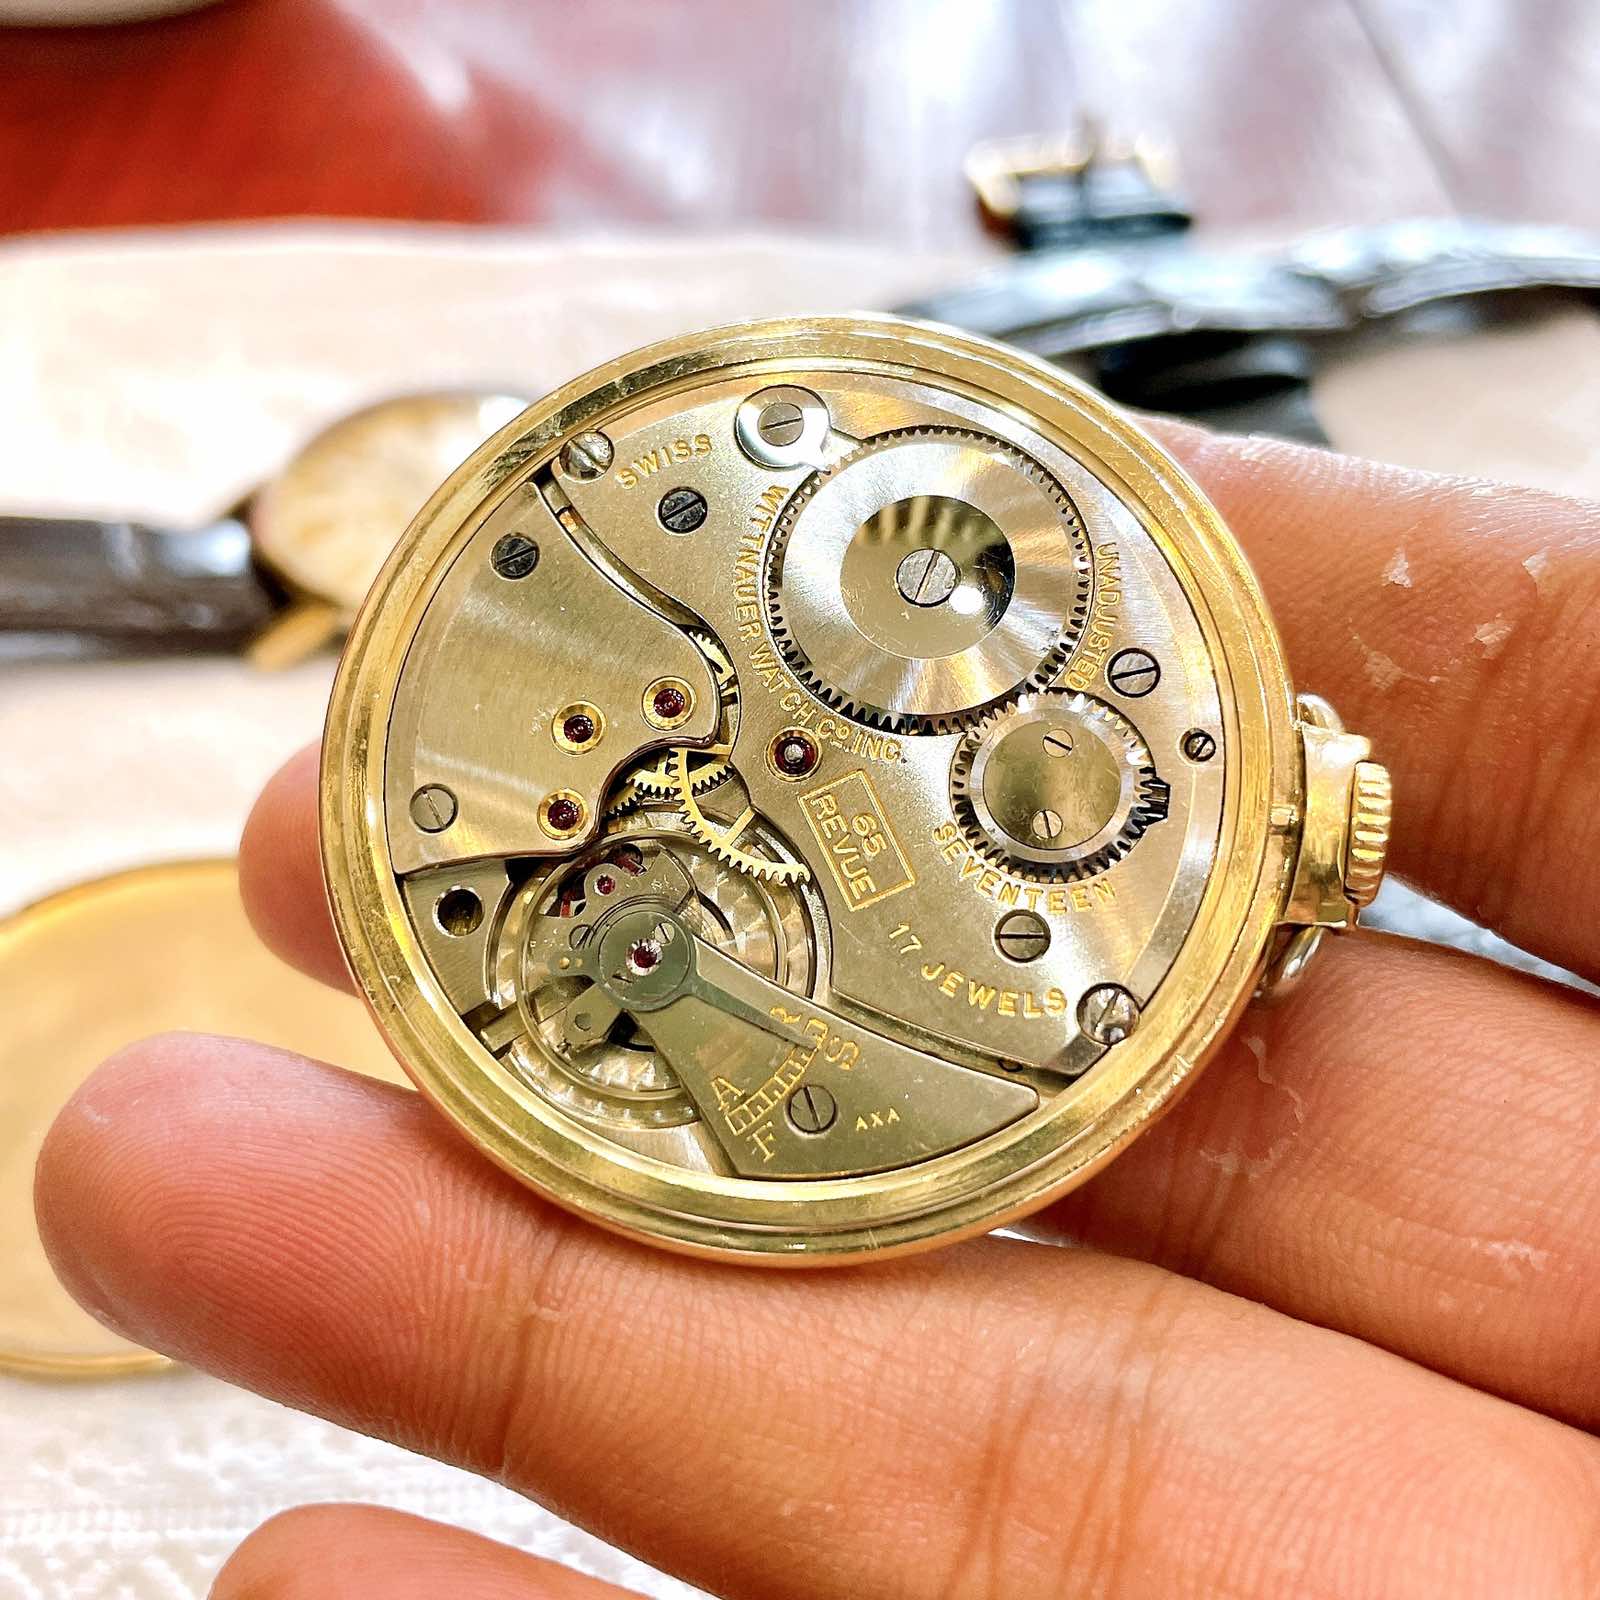 Đồng hồ Quả quýt Wittnauer - Longines Revue lên dây chính hãng Thuỵ Sĩ 